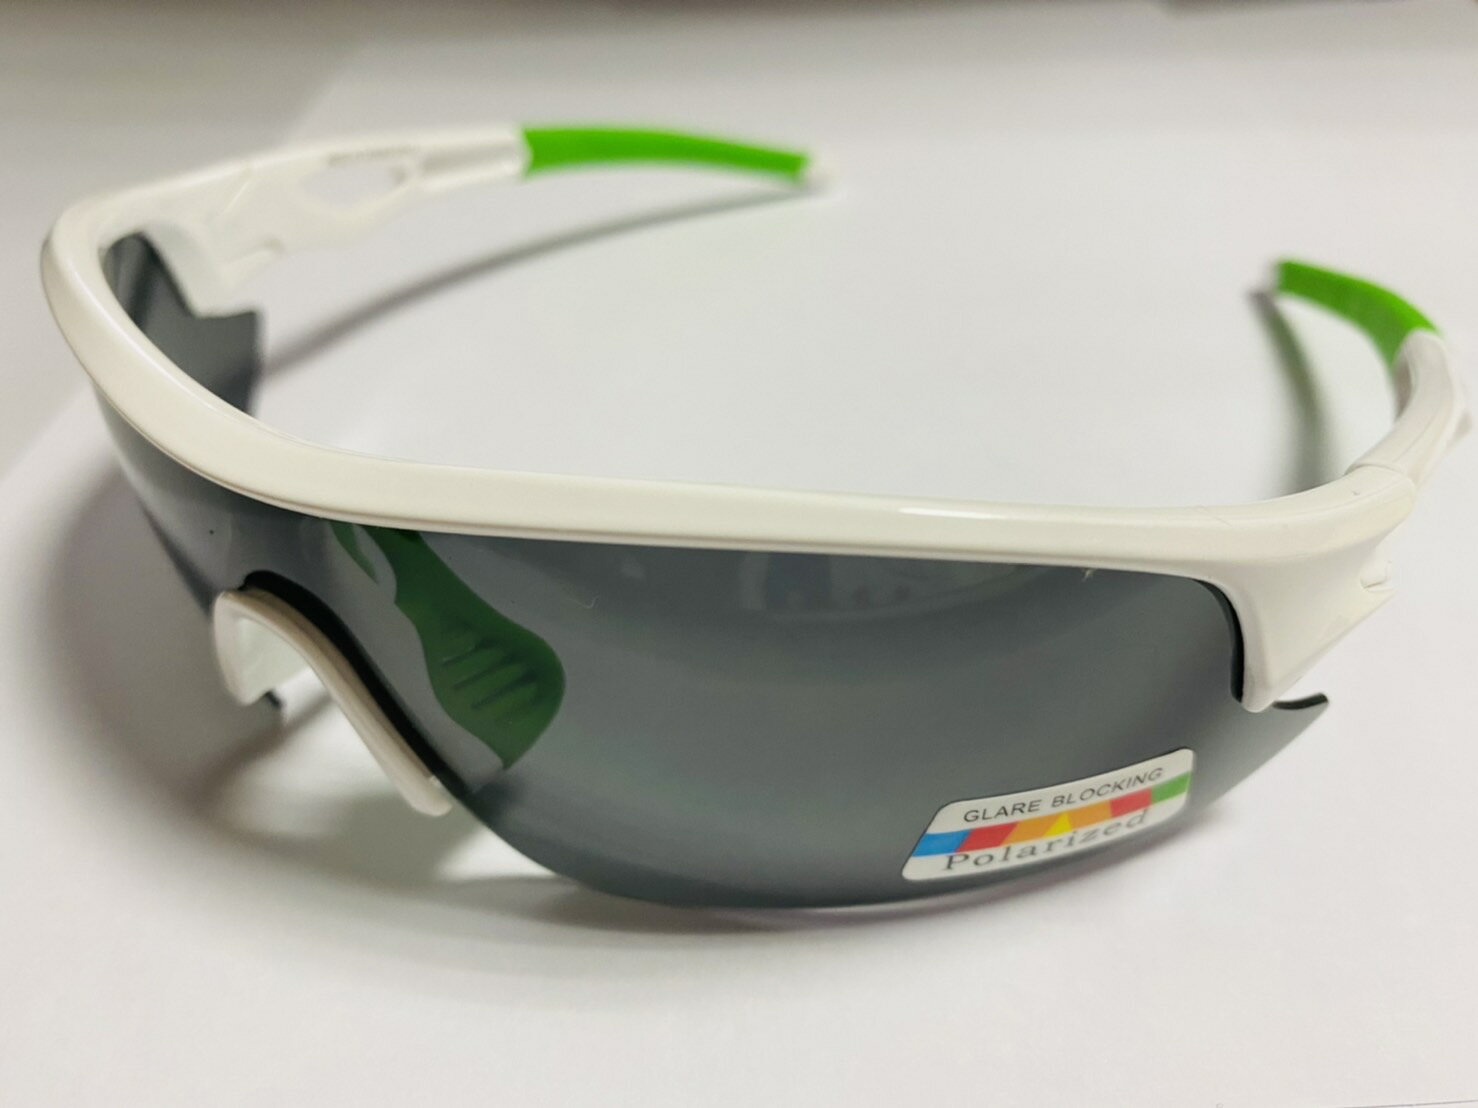 【【蘋果戶外】】APEX 309 白 台製 polarized 抗UV400 寶麗來偏光鏡片 運動型太陽眼鏡 附原廠盒、擦拭布(袋)